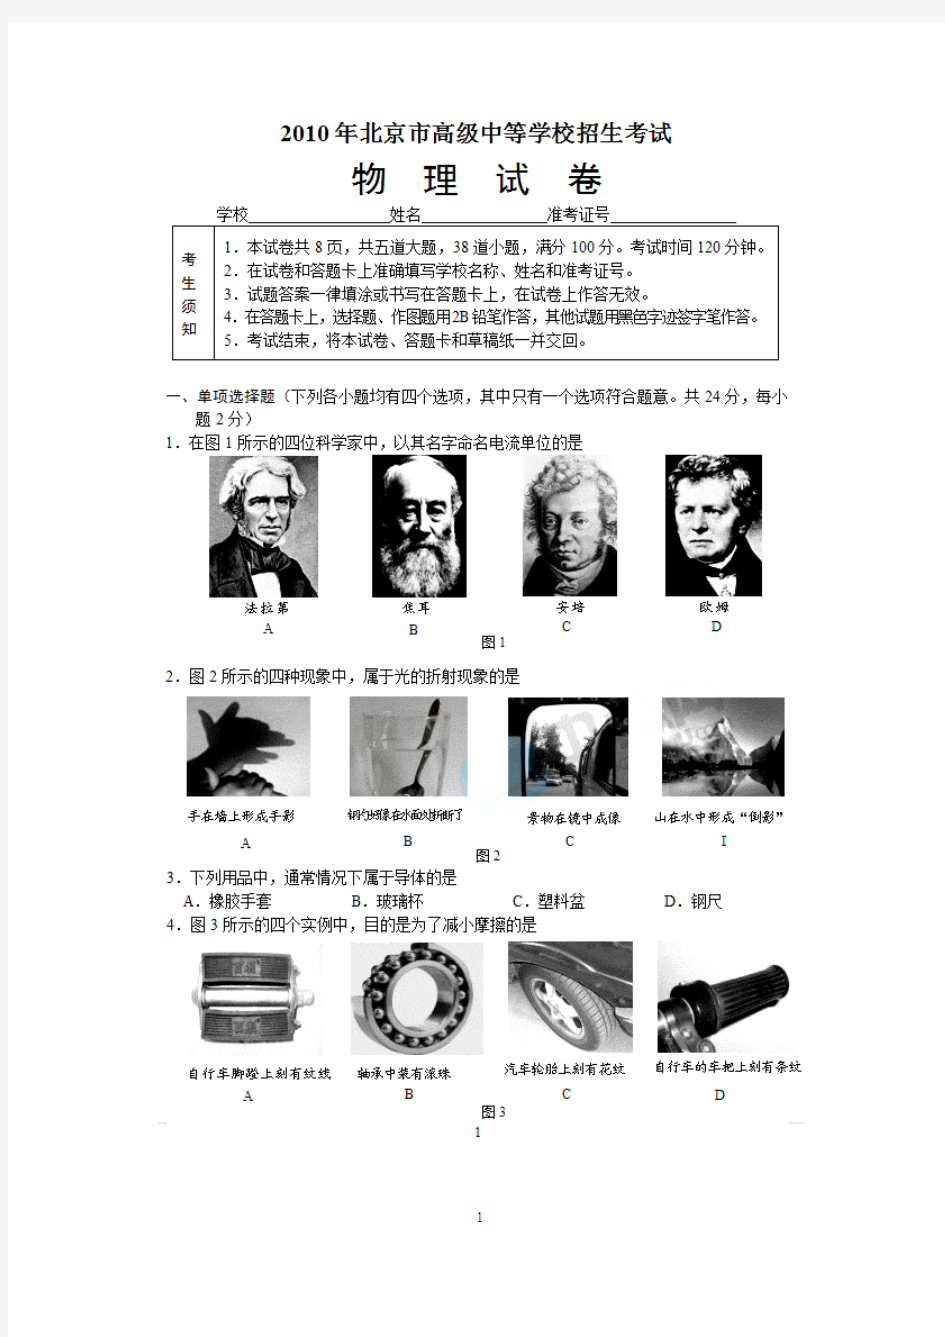 (免费)2010年北京中考物理试题及答案(试卷分析)[1]